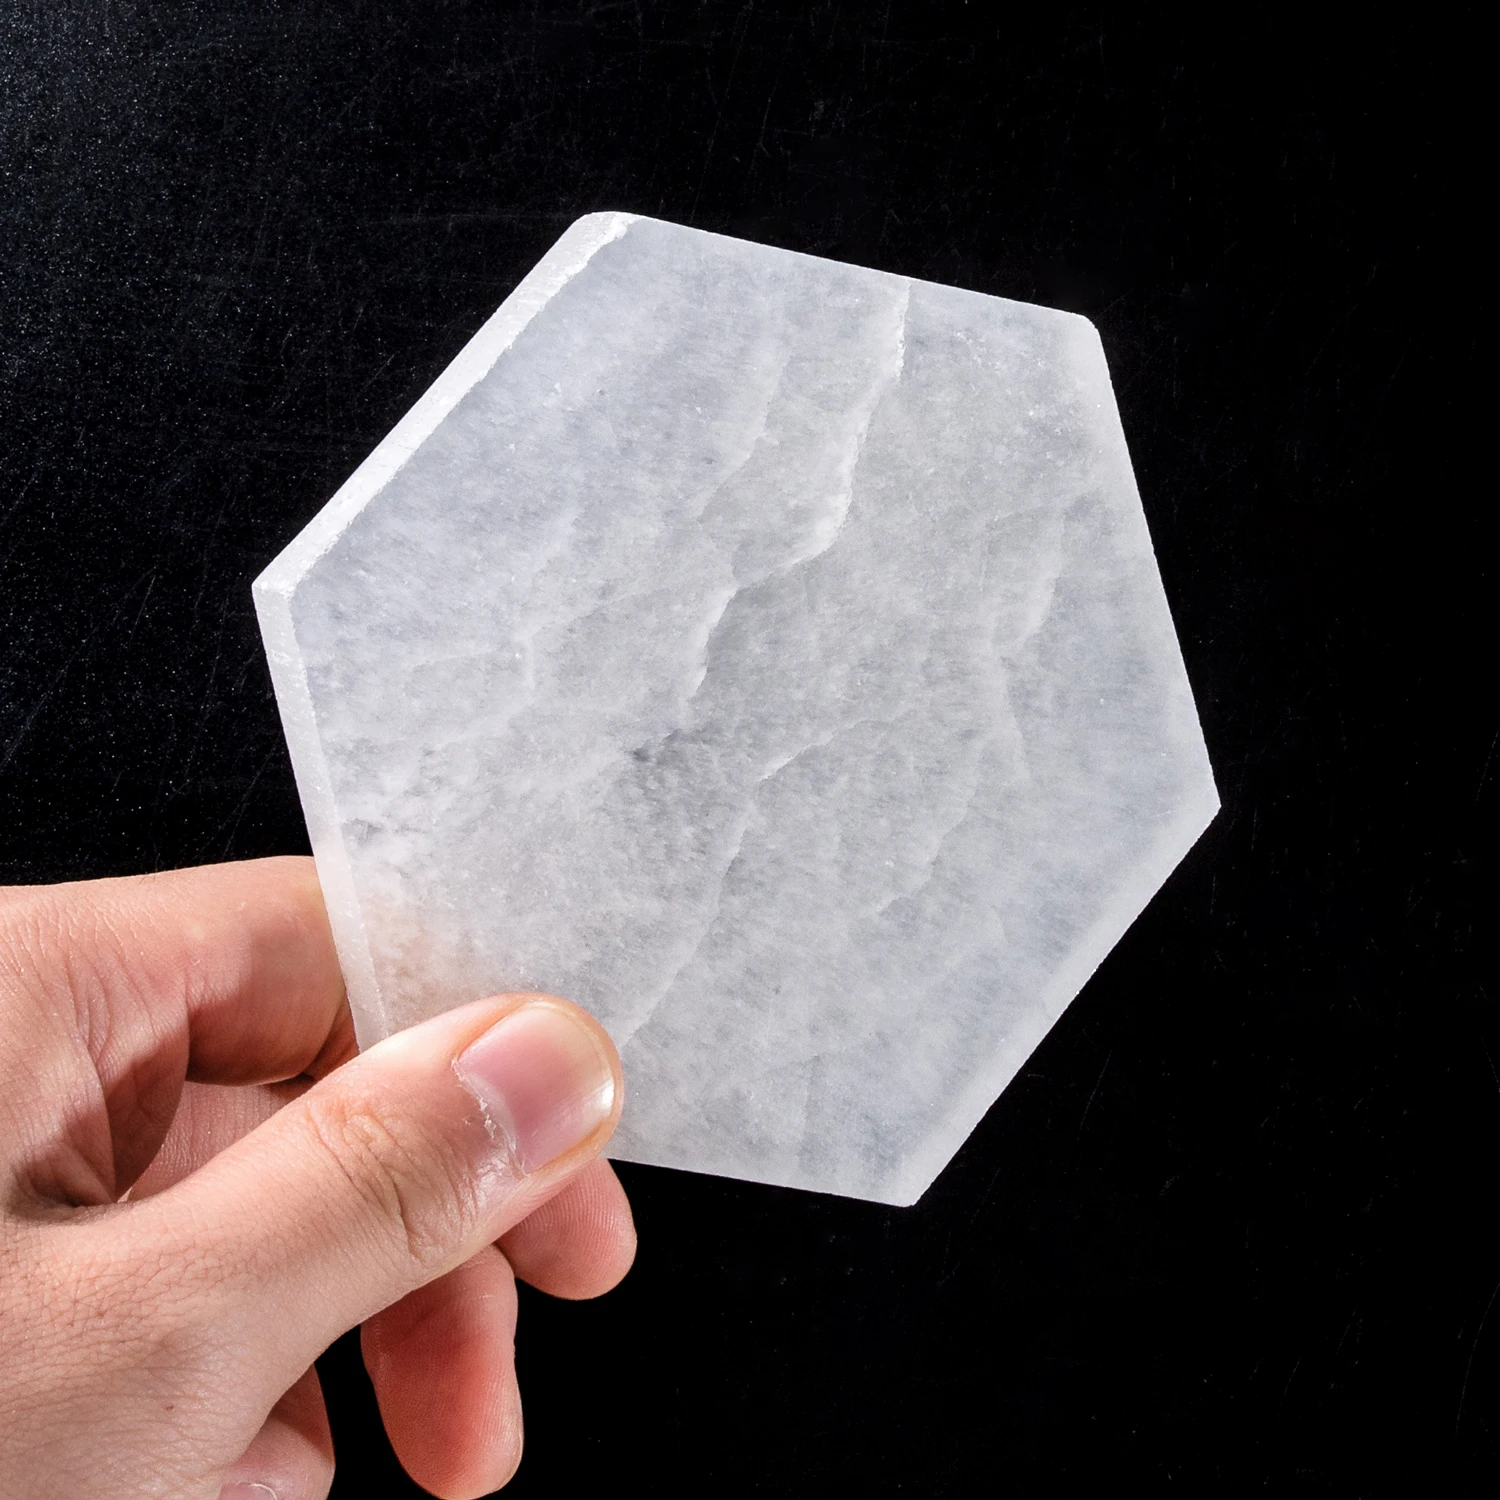 Шестигранная селенитовая пластина Кристалл кварцевые кристаллы рейки целебная энергия настоянный драгоценный камень лоток пьедестал Декор Орнамент натуральный камень - Цвет: 1pcsB Selenite Plate